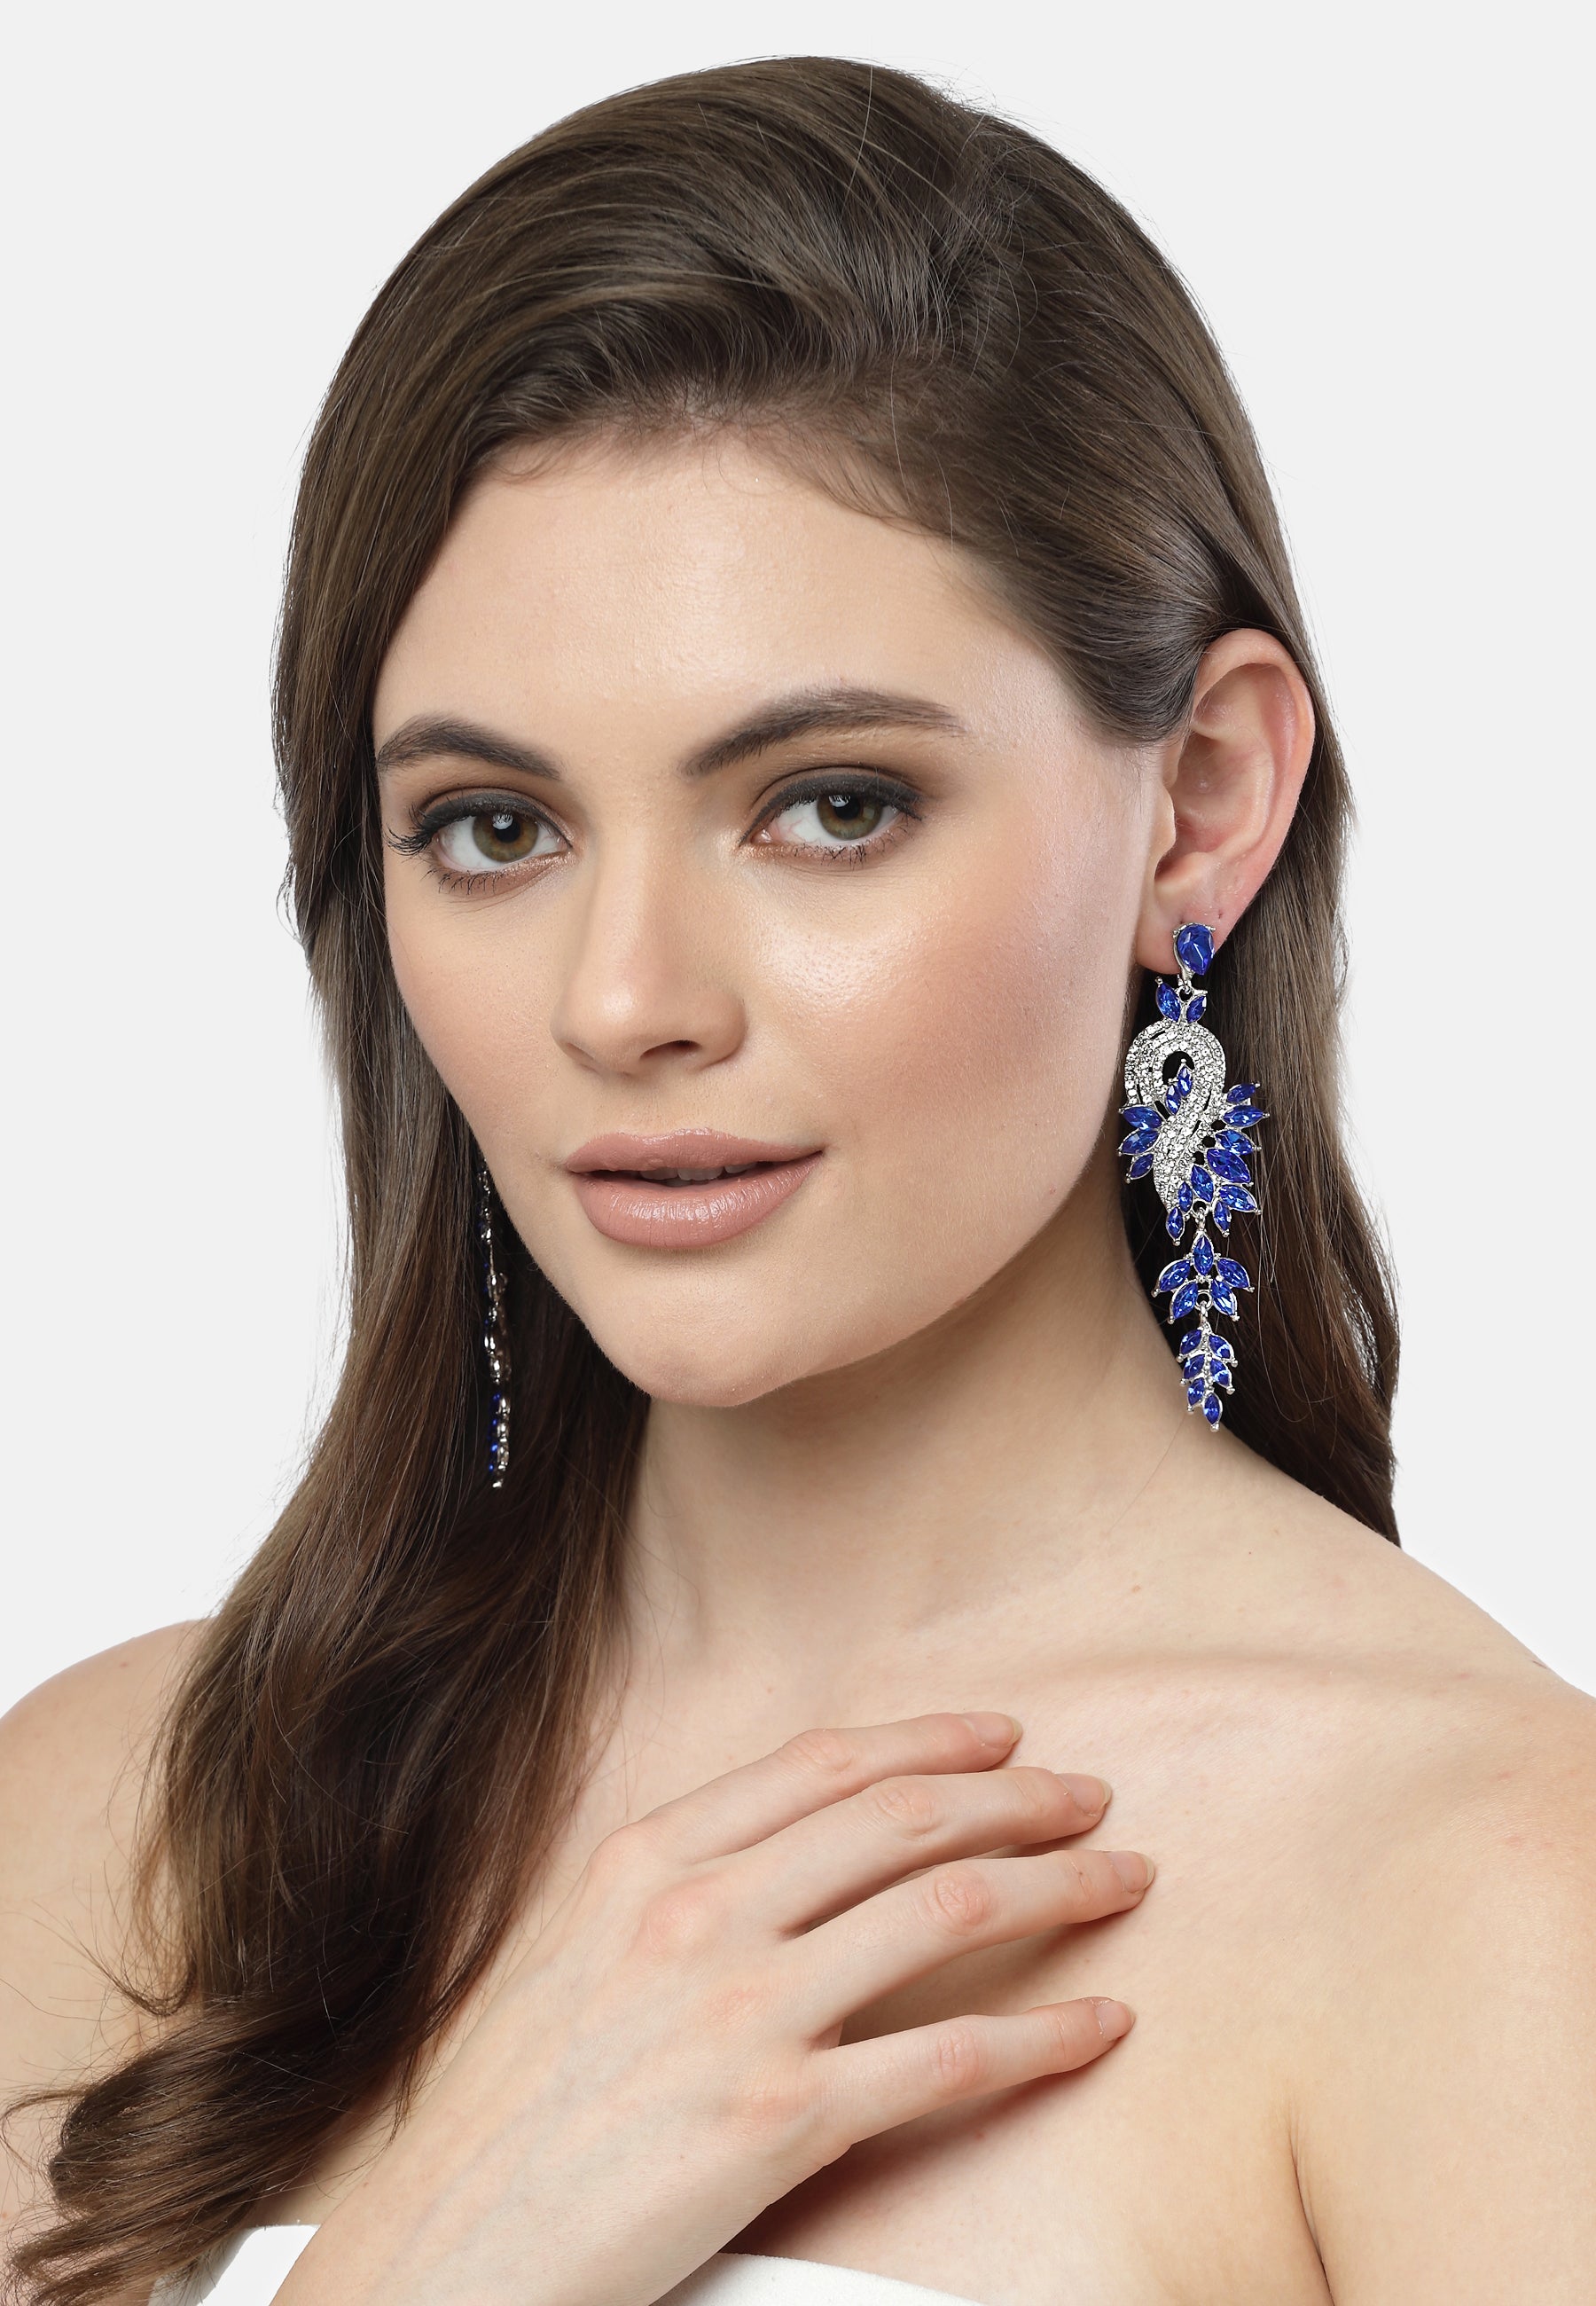 Blaue Kristallblatt-Ohrringe